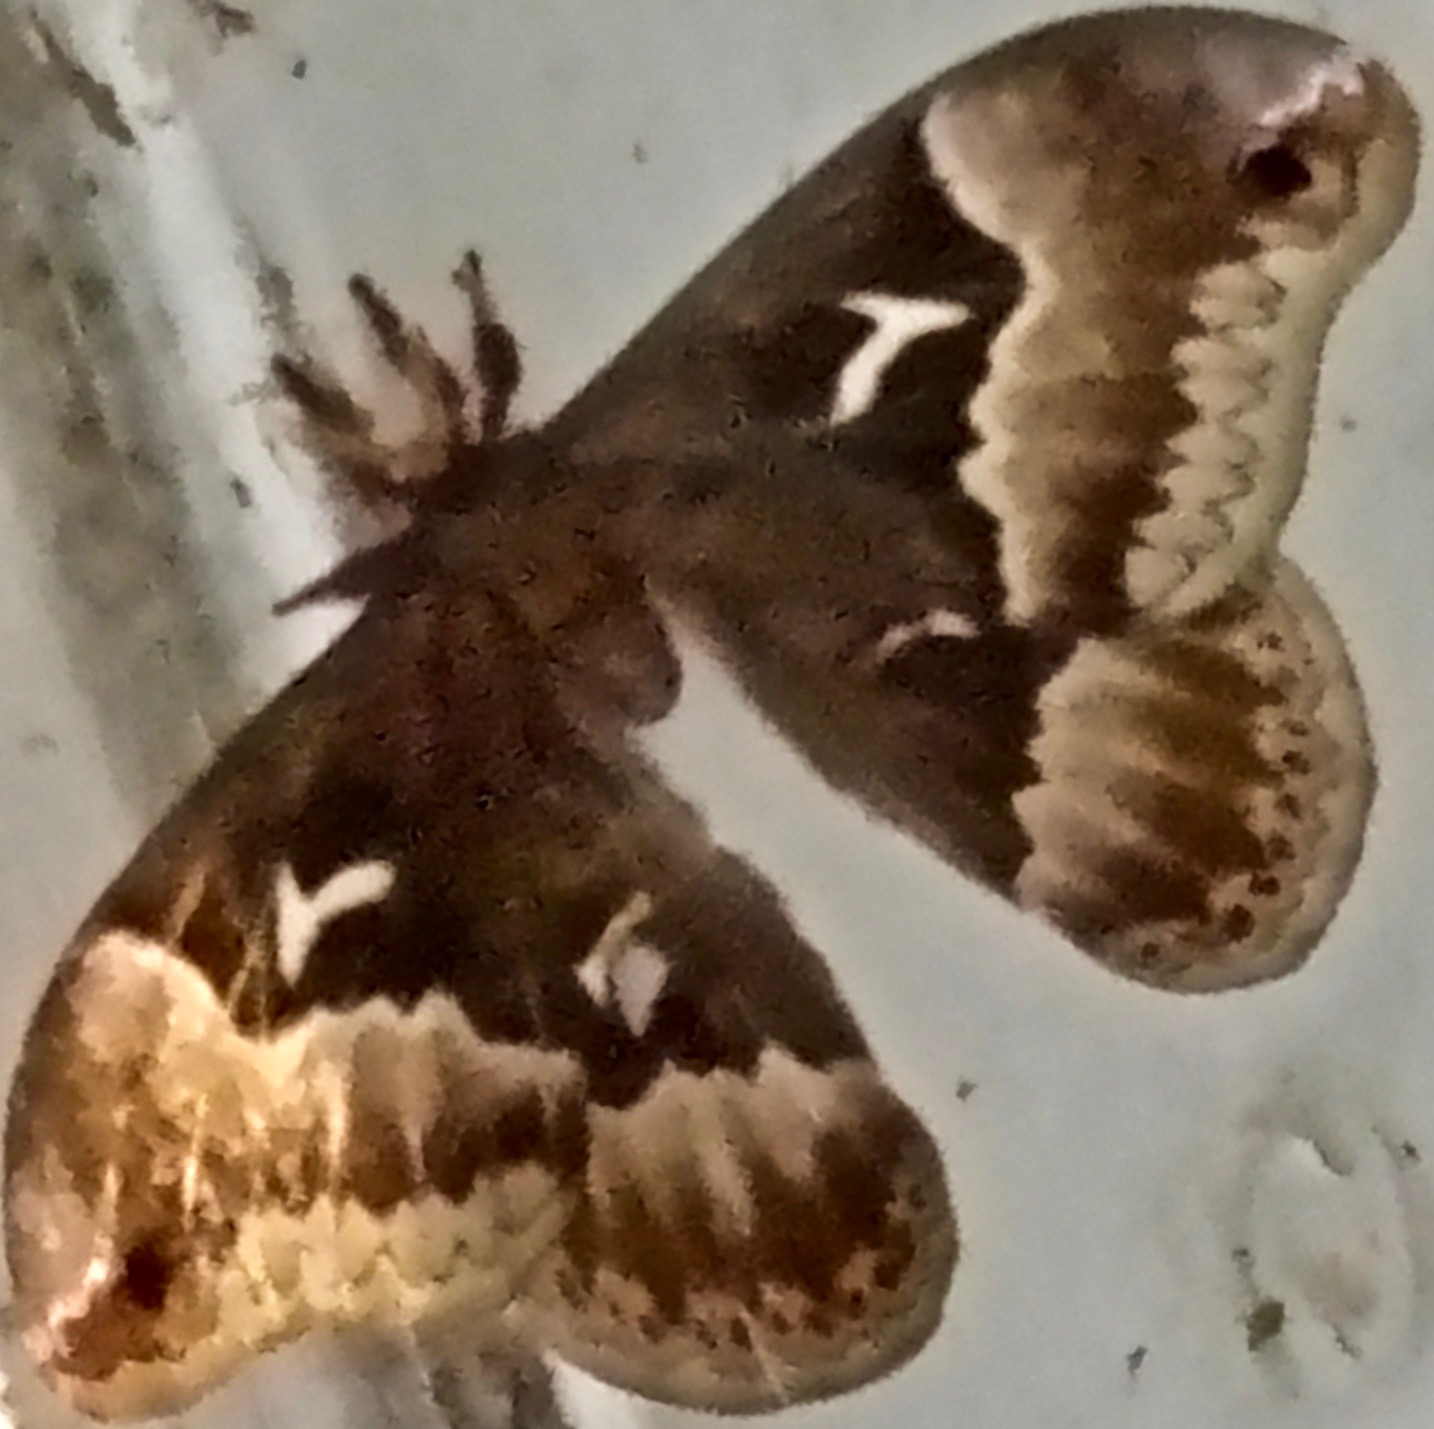 Promethea Moth (Callosamia promethea)